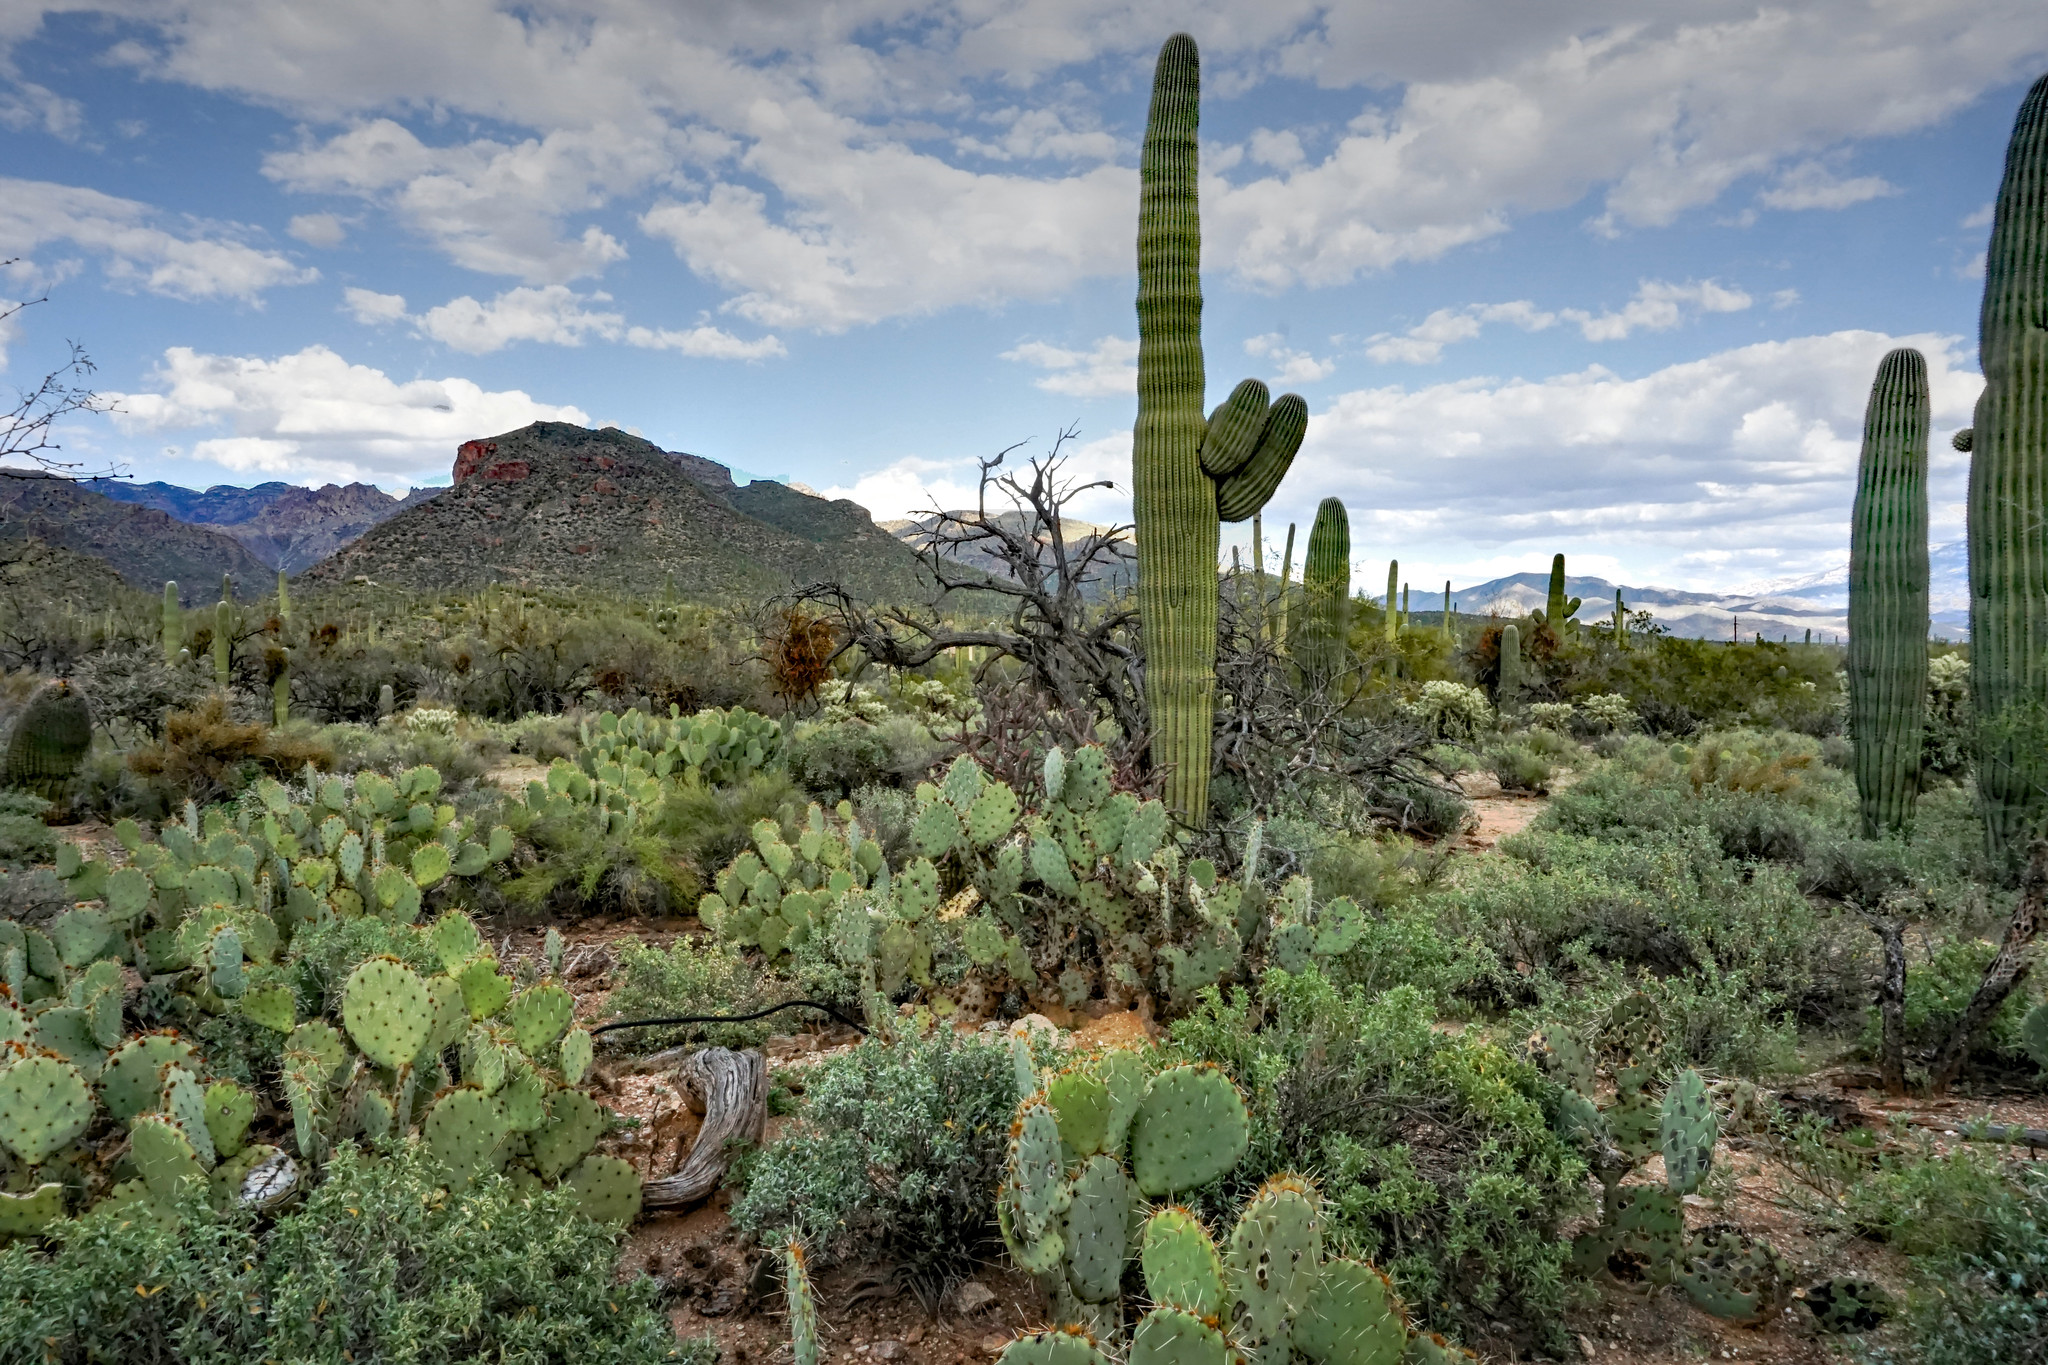 Saguaro cacti in Tucson, Arizona.